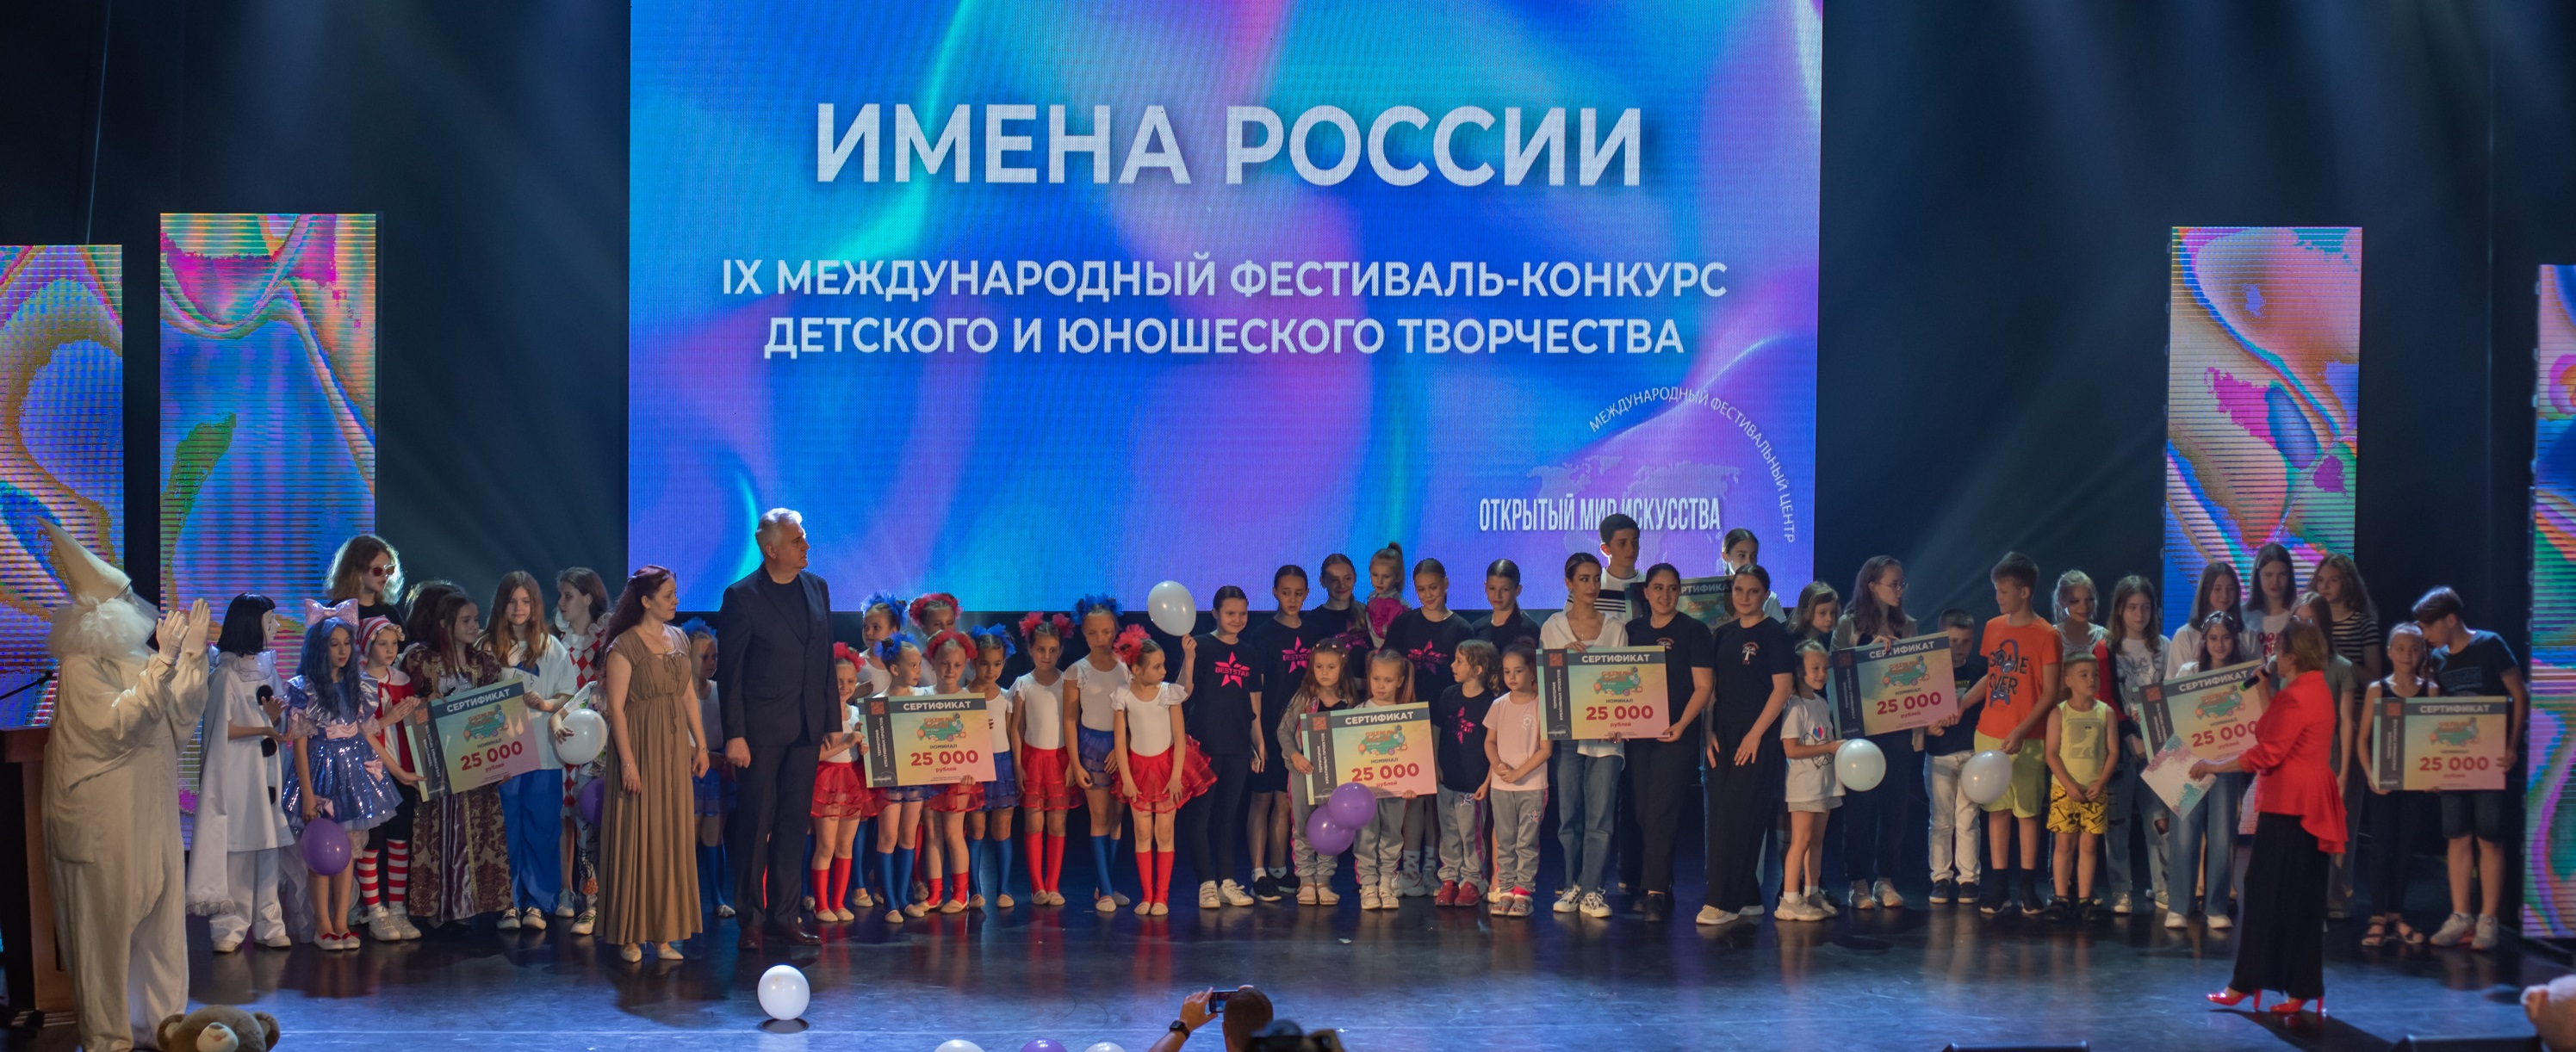 Фото Международный фестиваль-конкурс ИМЕНА РОССИИ отборочный этап Симферополь